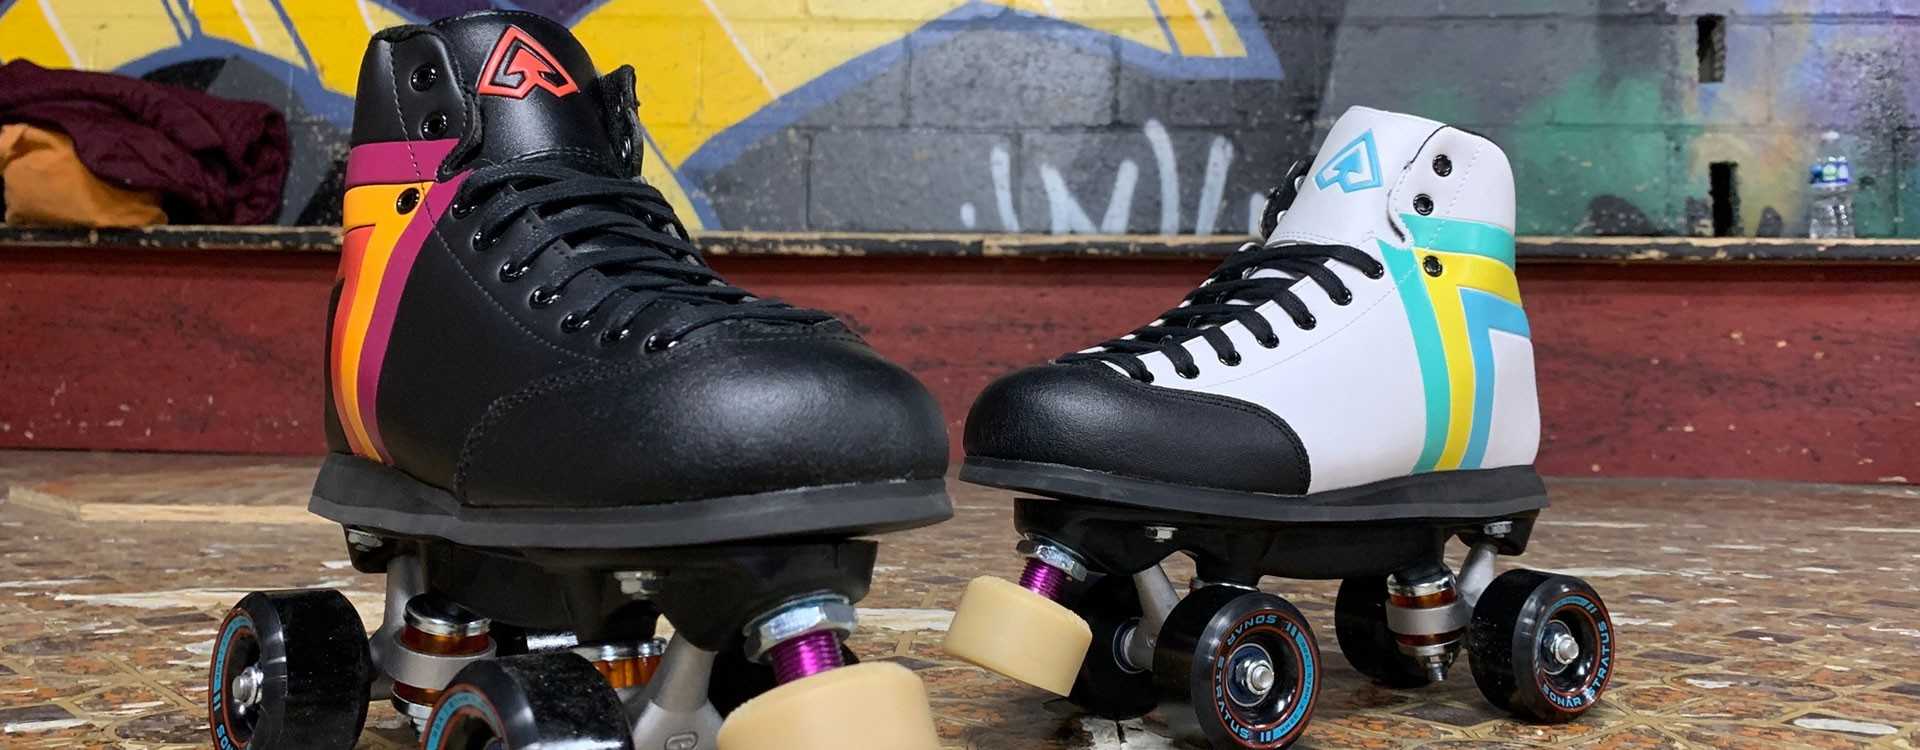 Review: Antik Skyhawk Best do It all roller skates?